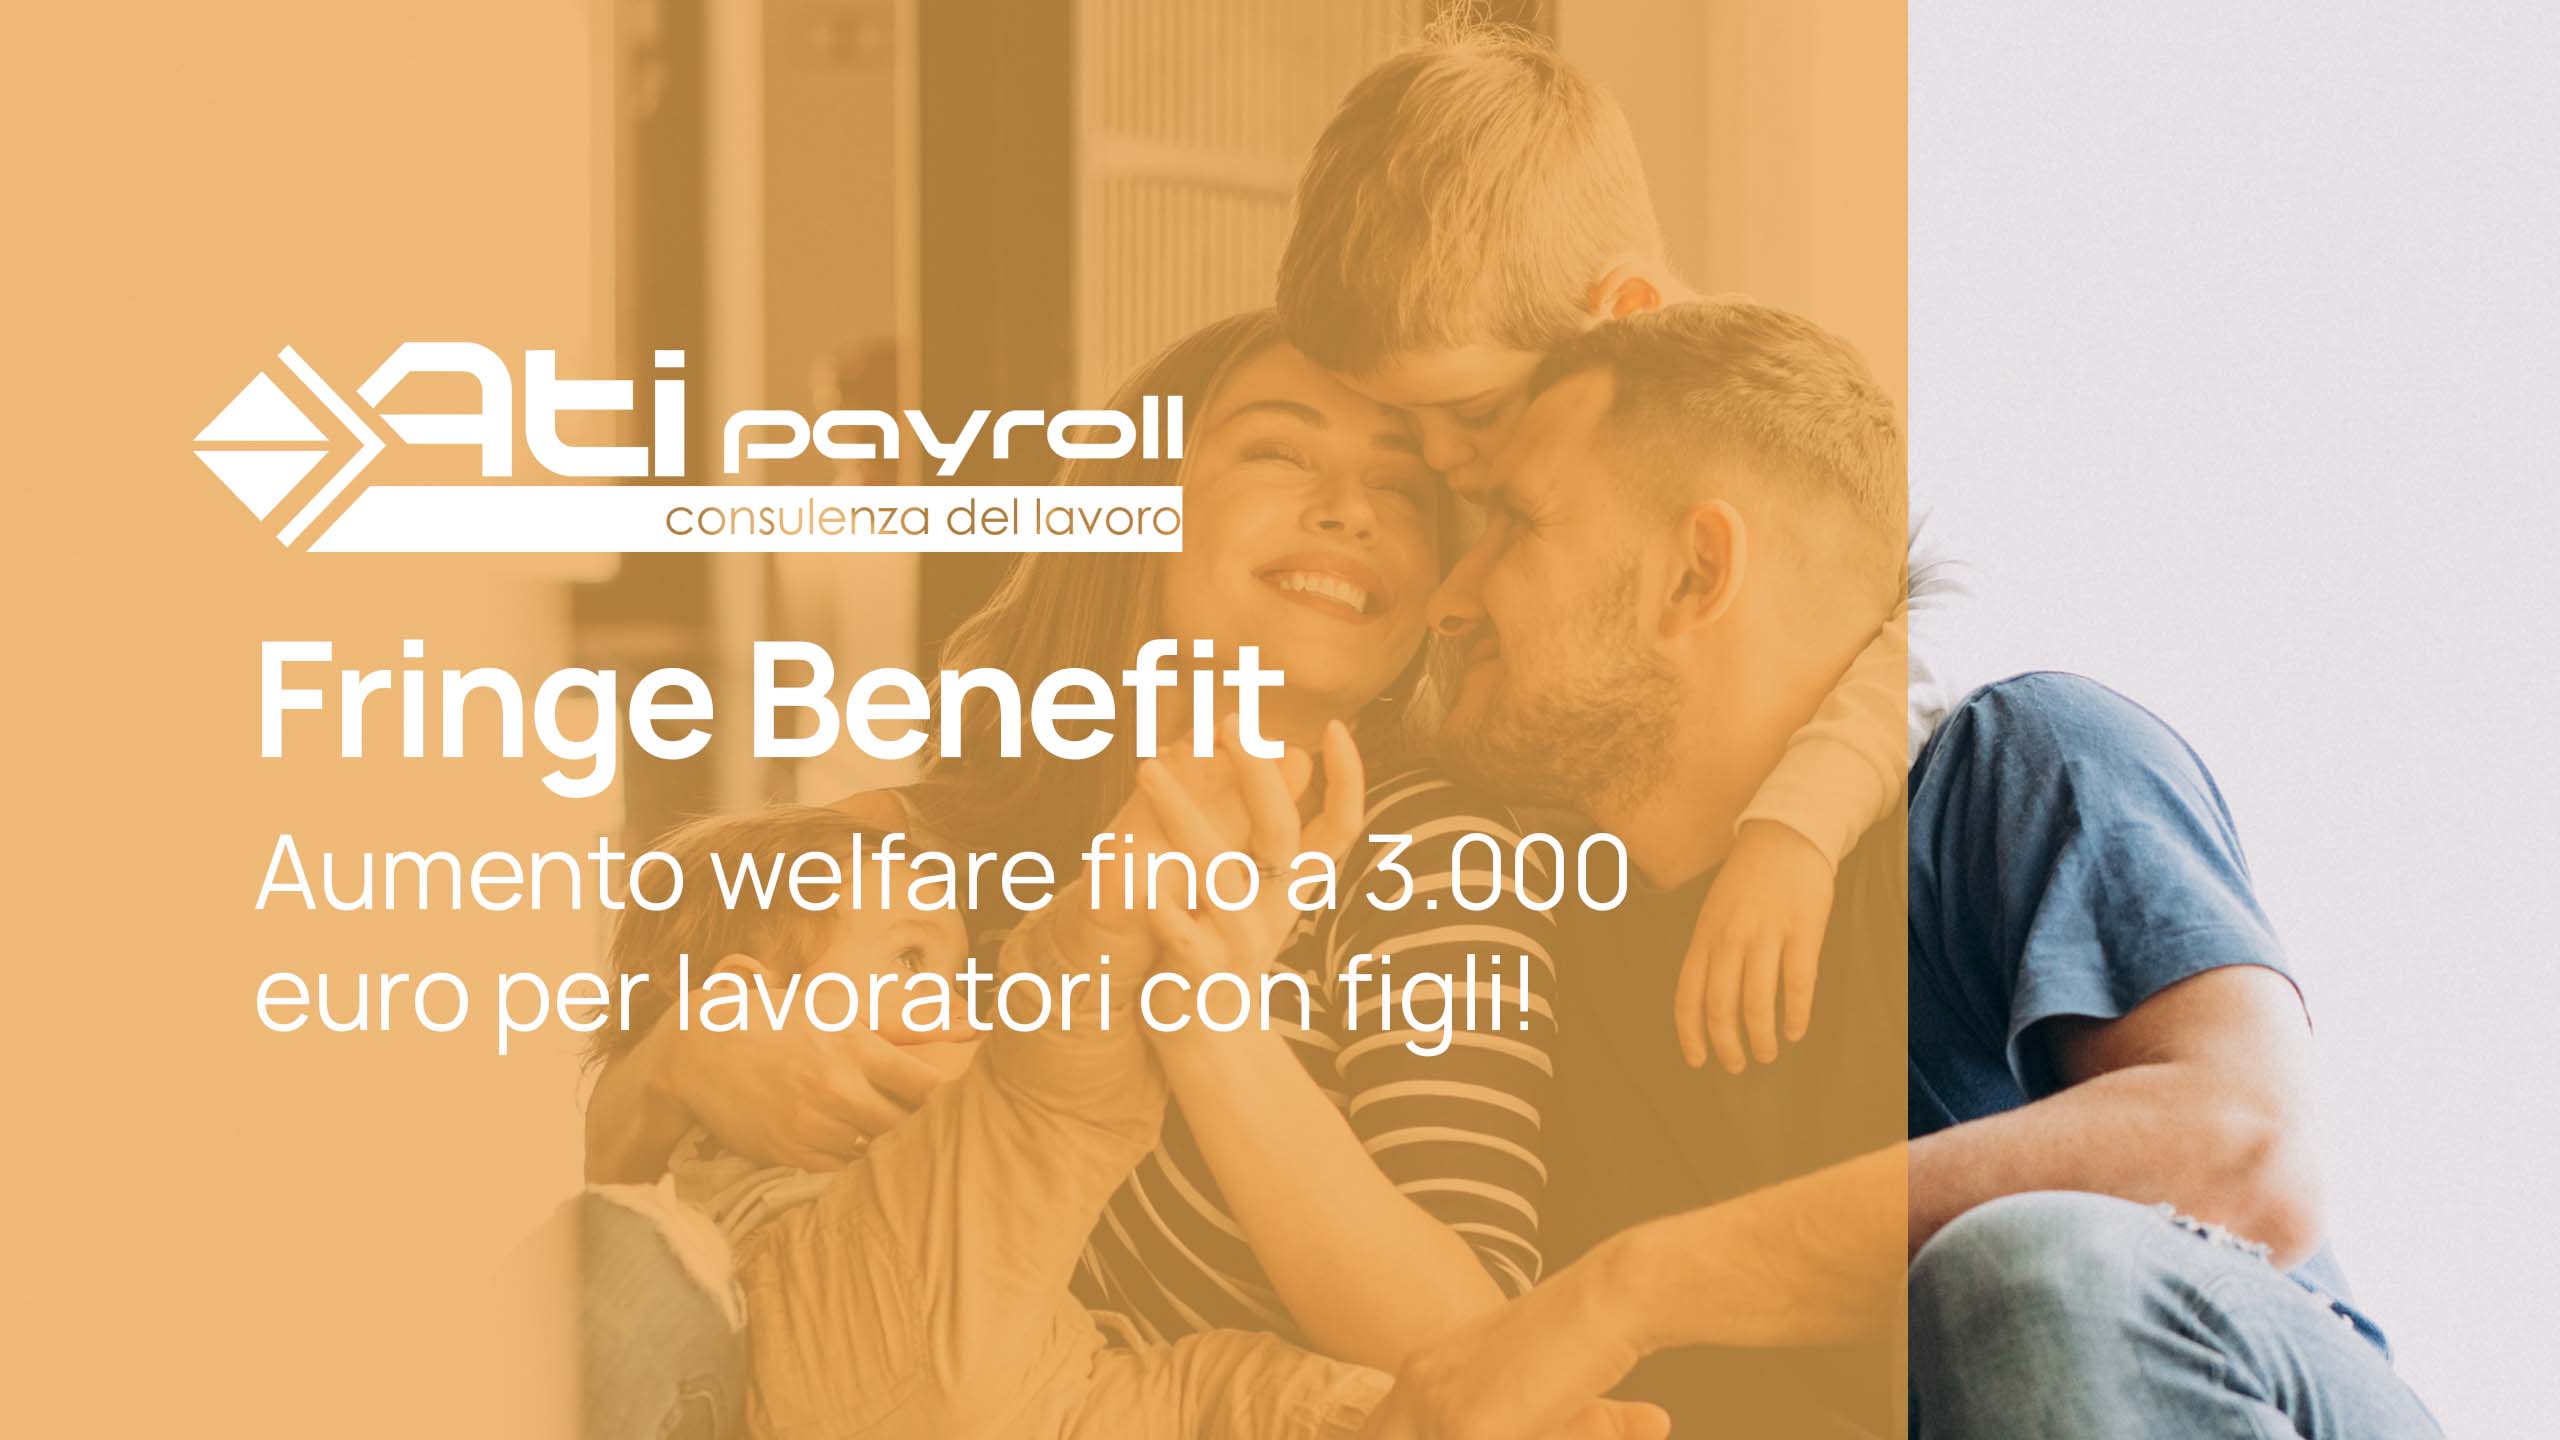 Fringe benefit: aumento welfare per lavoratori dipendenti con figli fino a 3.000 euro!